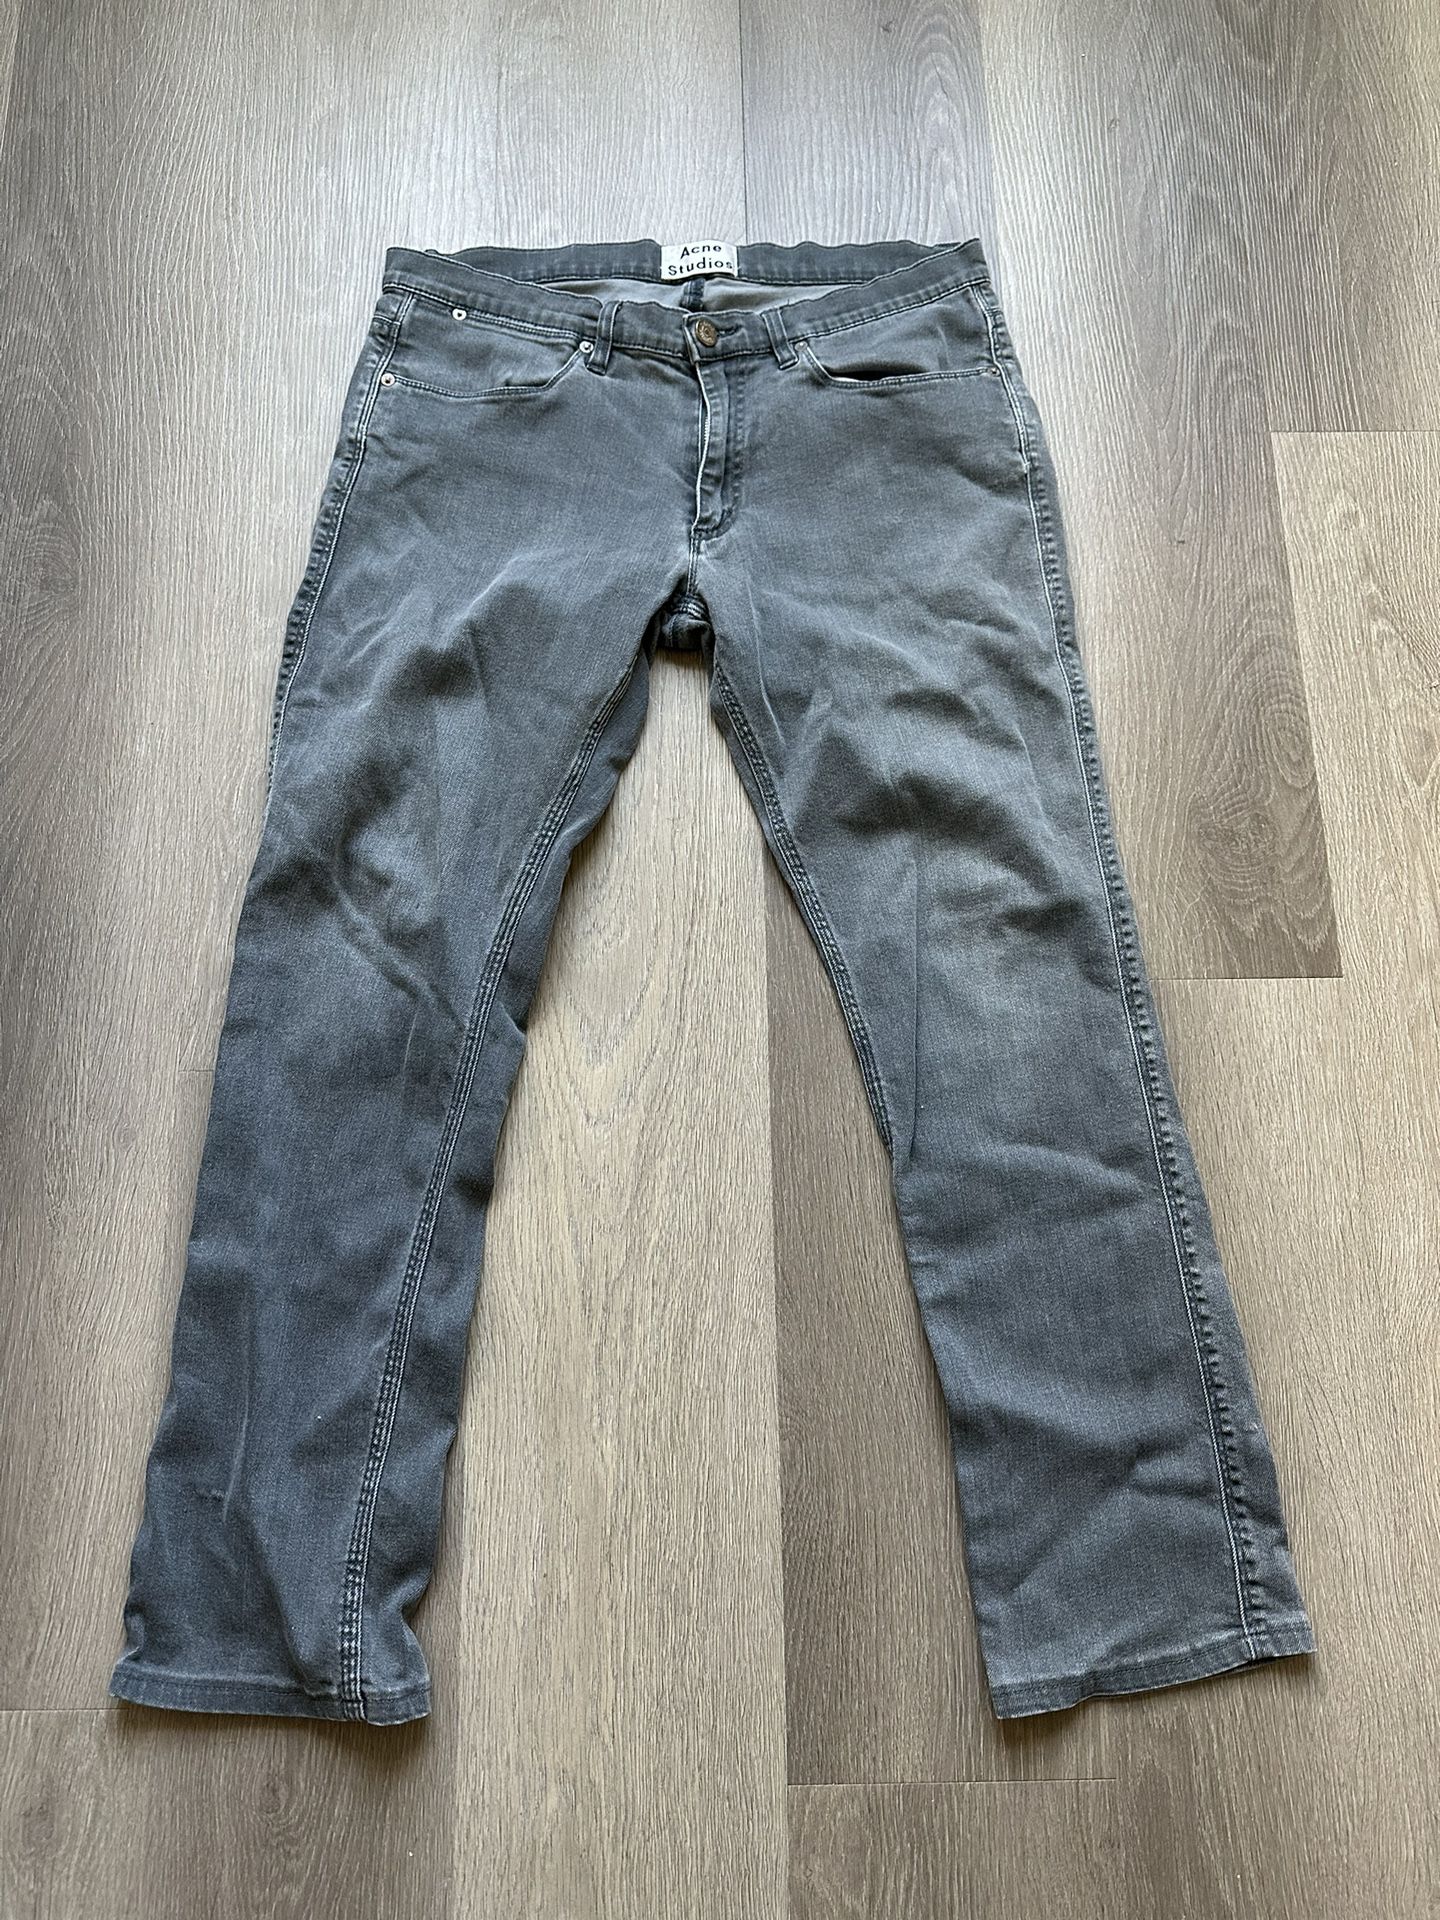 blæk princip Tilbagetrækning Acne Studios Skinny Jeans 33/32 for Sale in Austin, TX - OfferUp